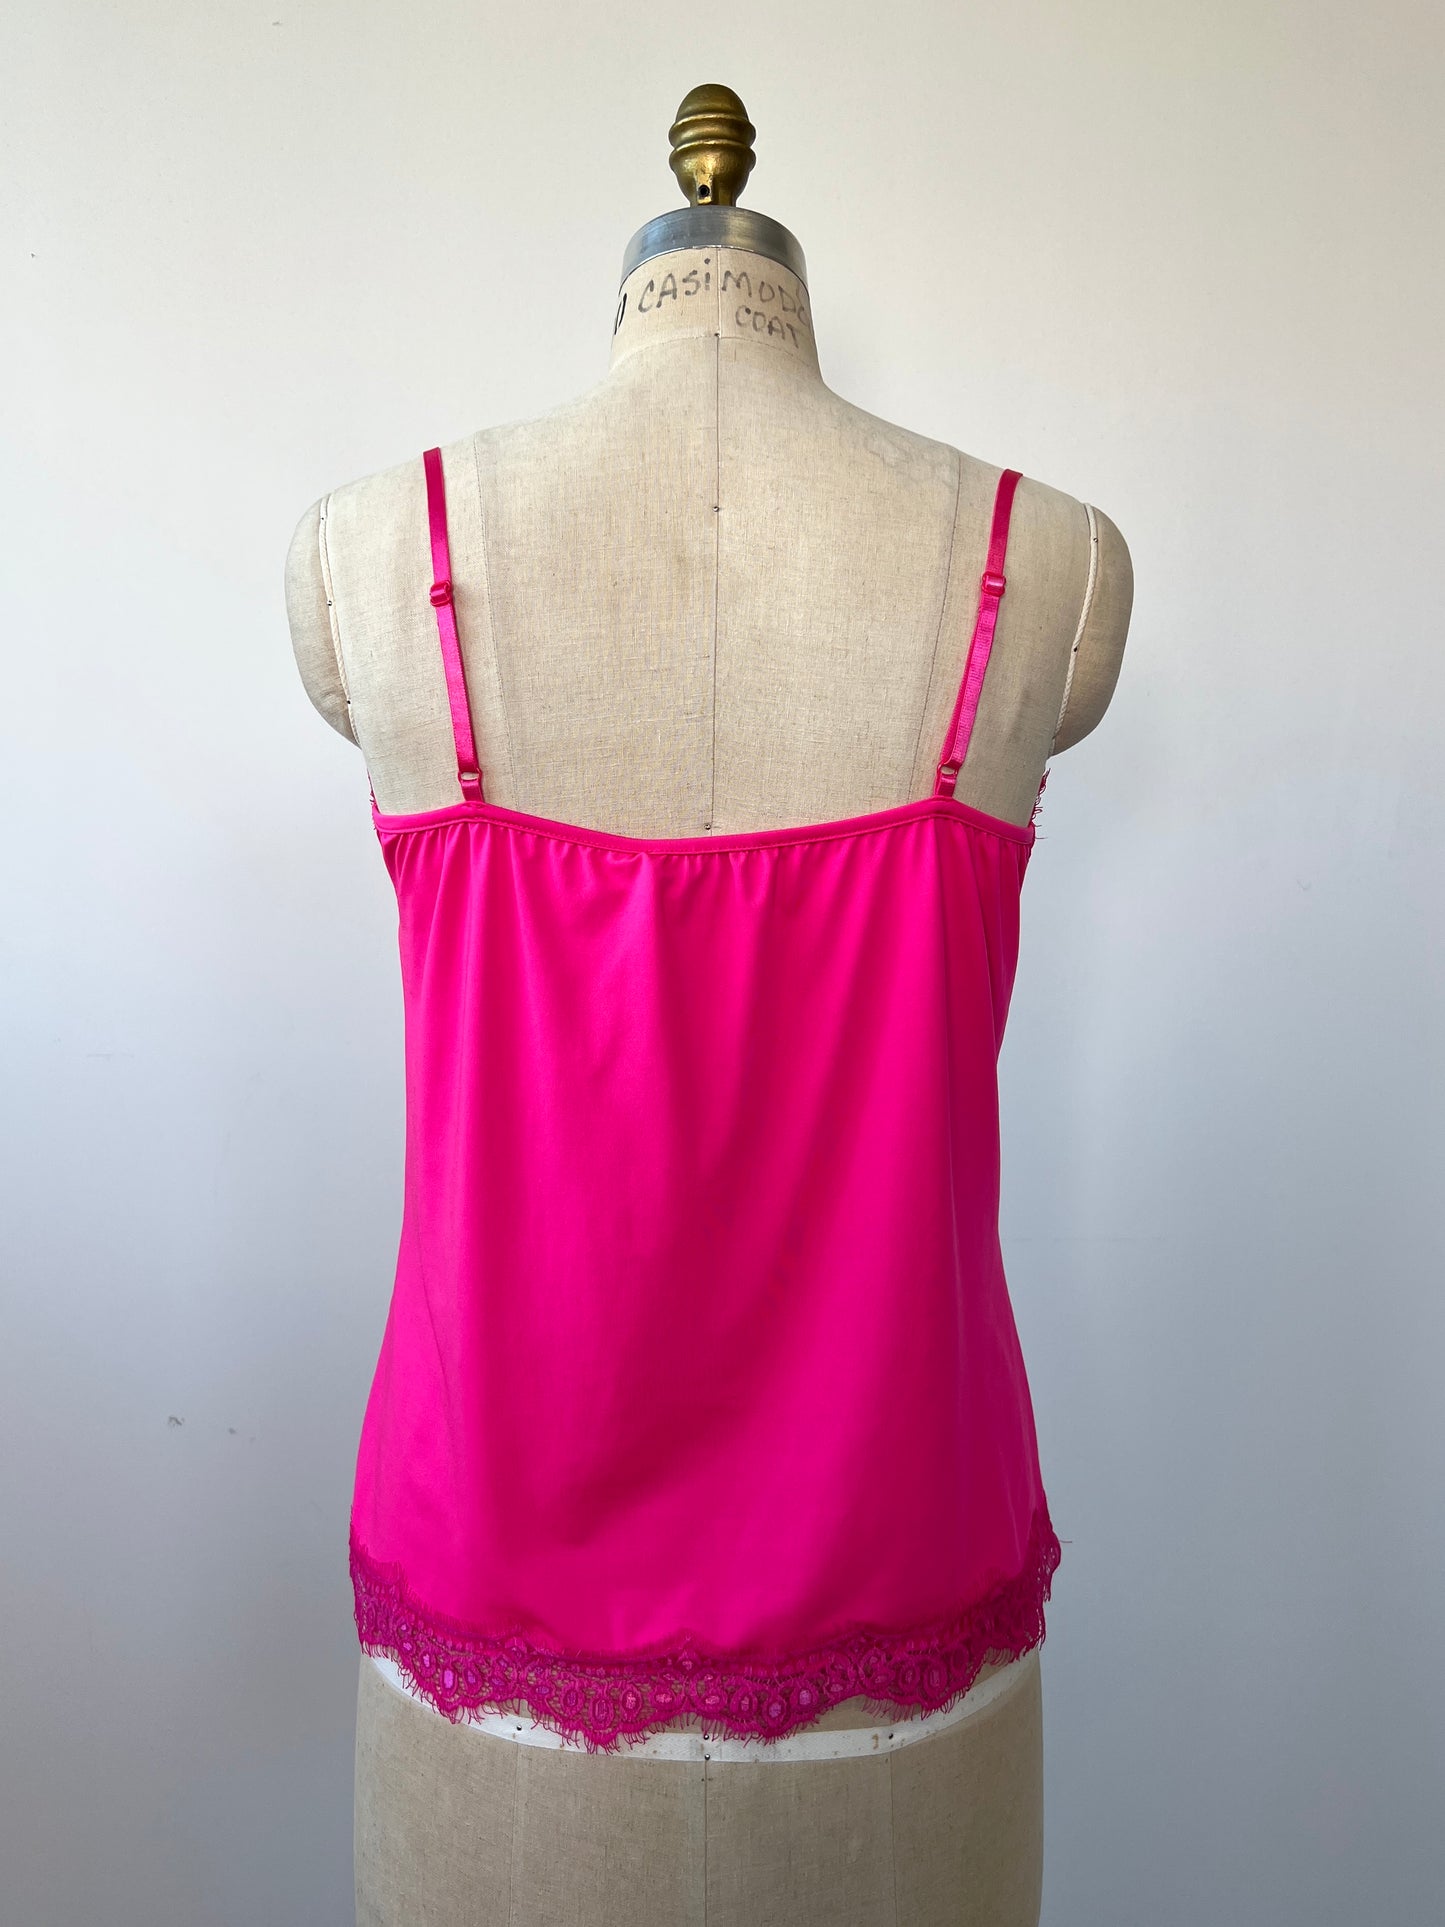 Camisole rose à finitions de dentelles assorties (plusieurs couleurs!)